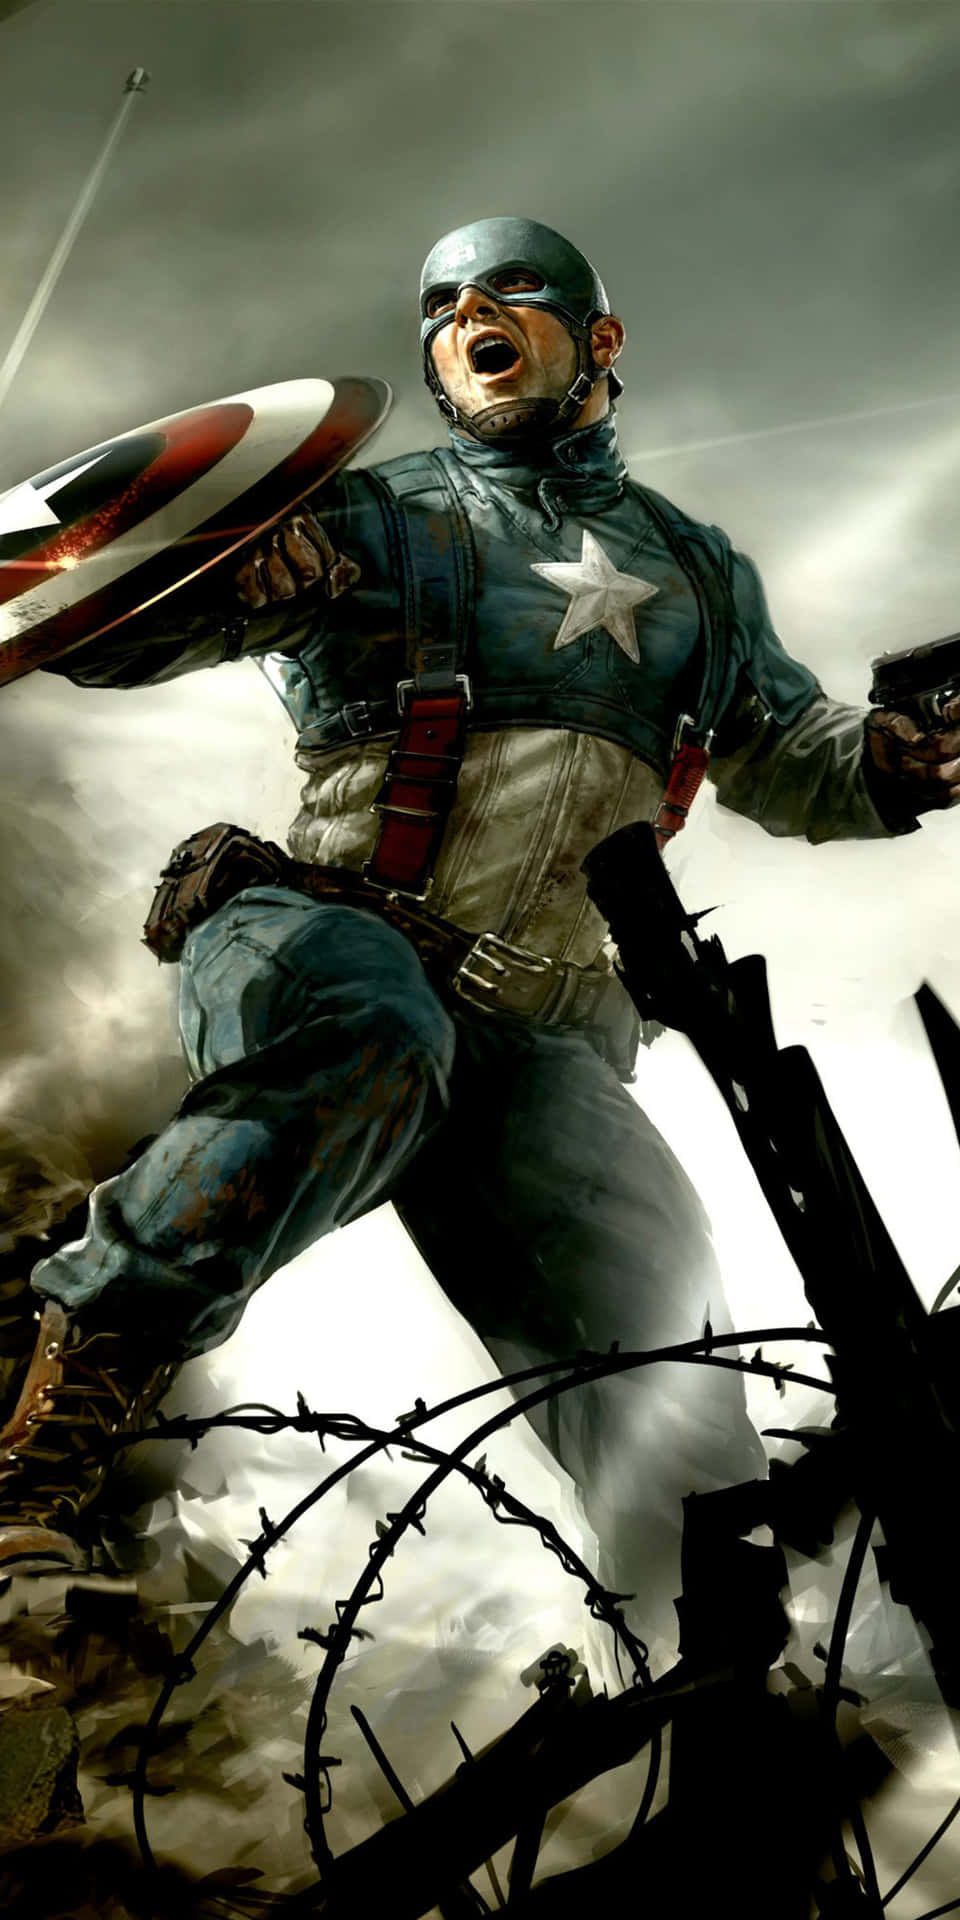 Pixel3 Bakgrundsbild Med Captain America: The First Avenger.